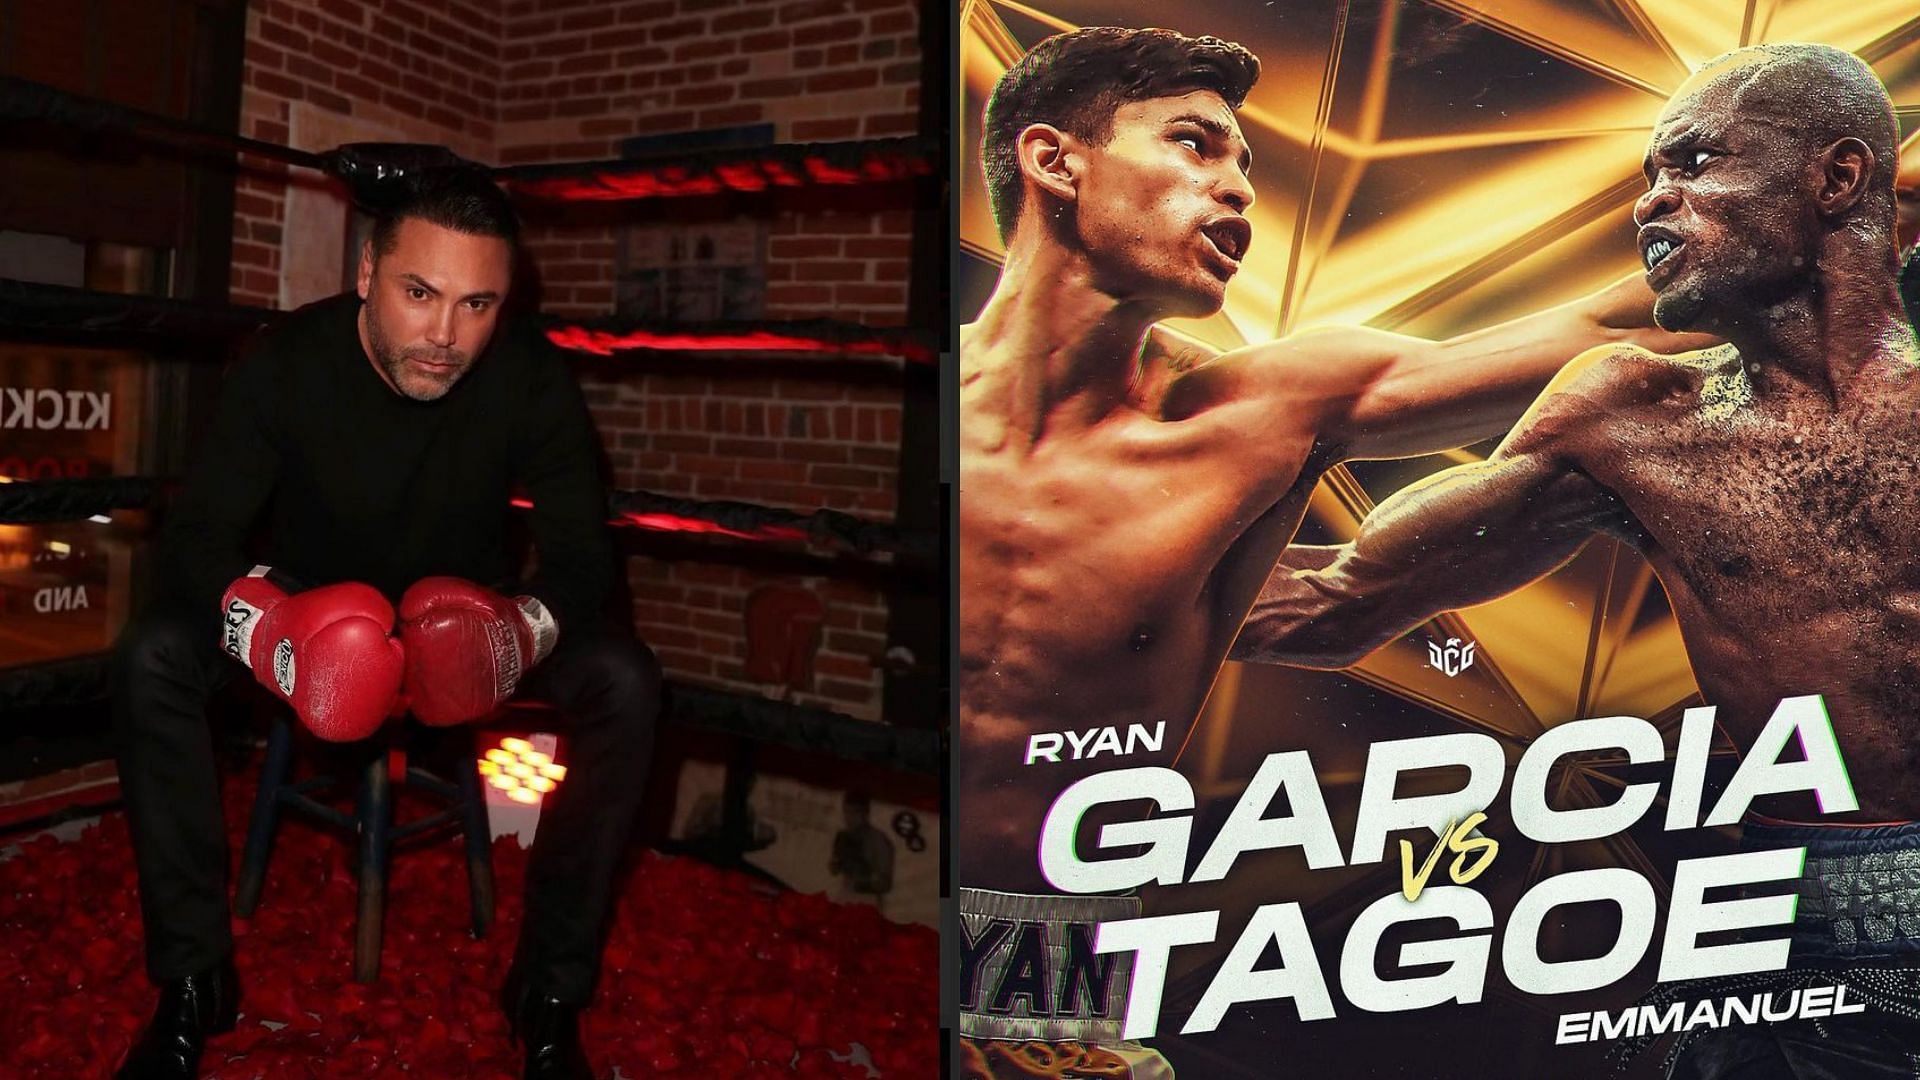 Oscar De La Hoya (left), Ryan Garcia vs. Emmanuel Tagoe (Right)